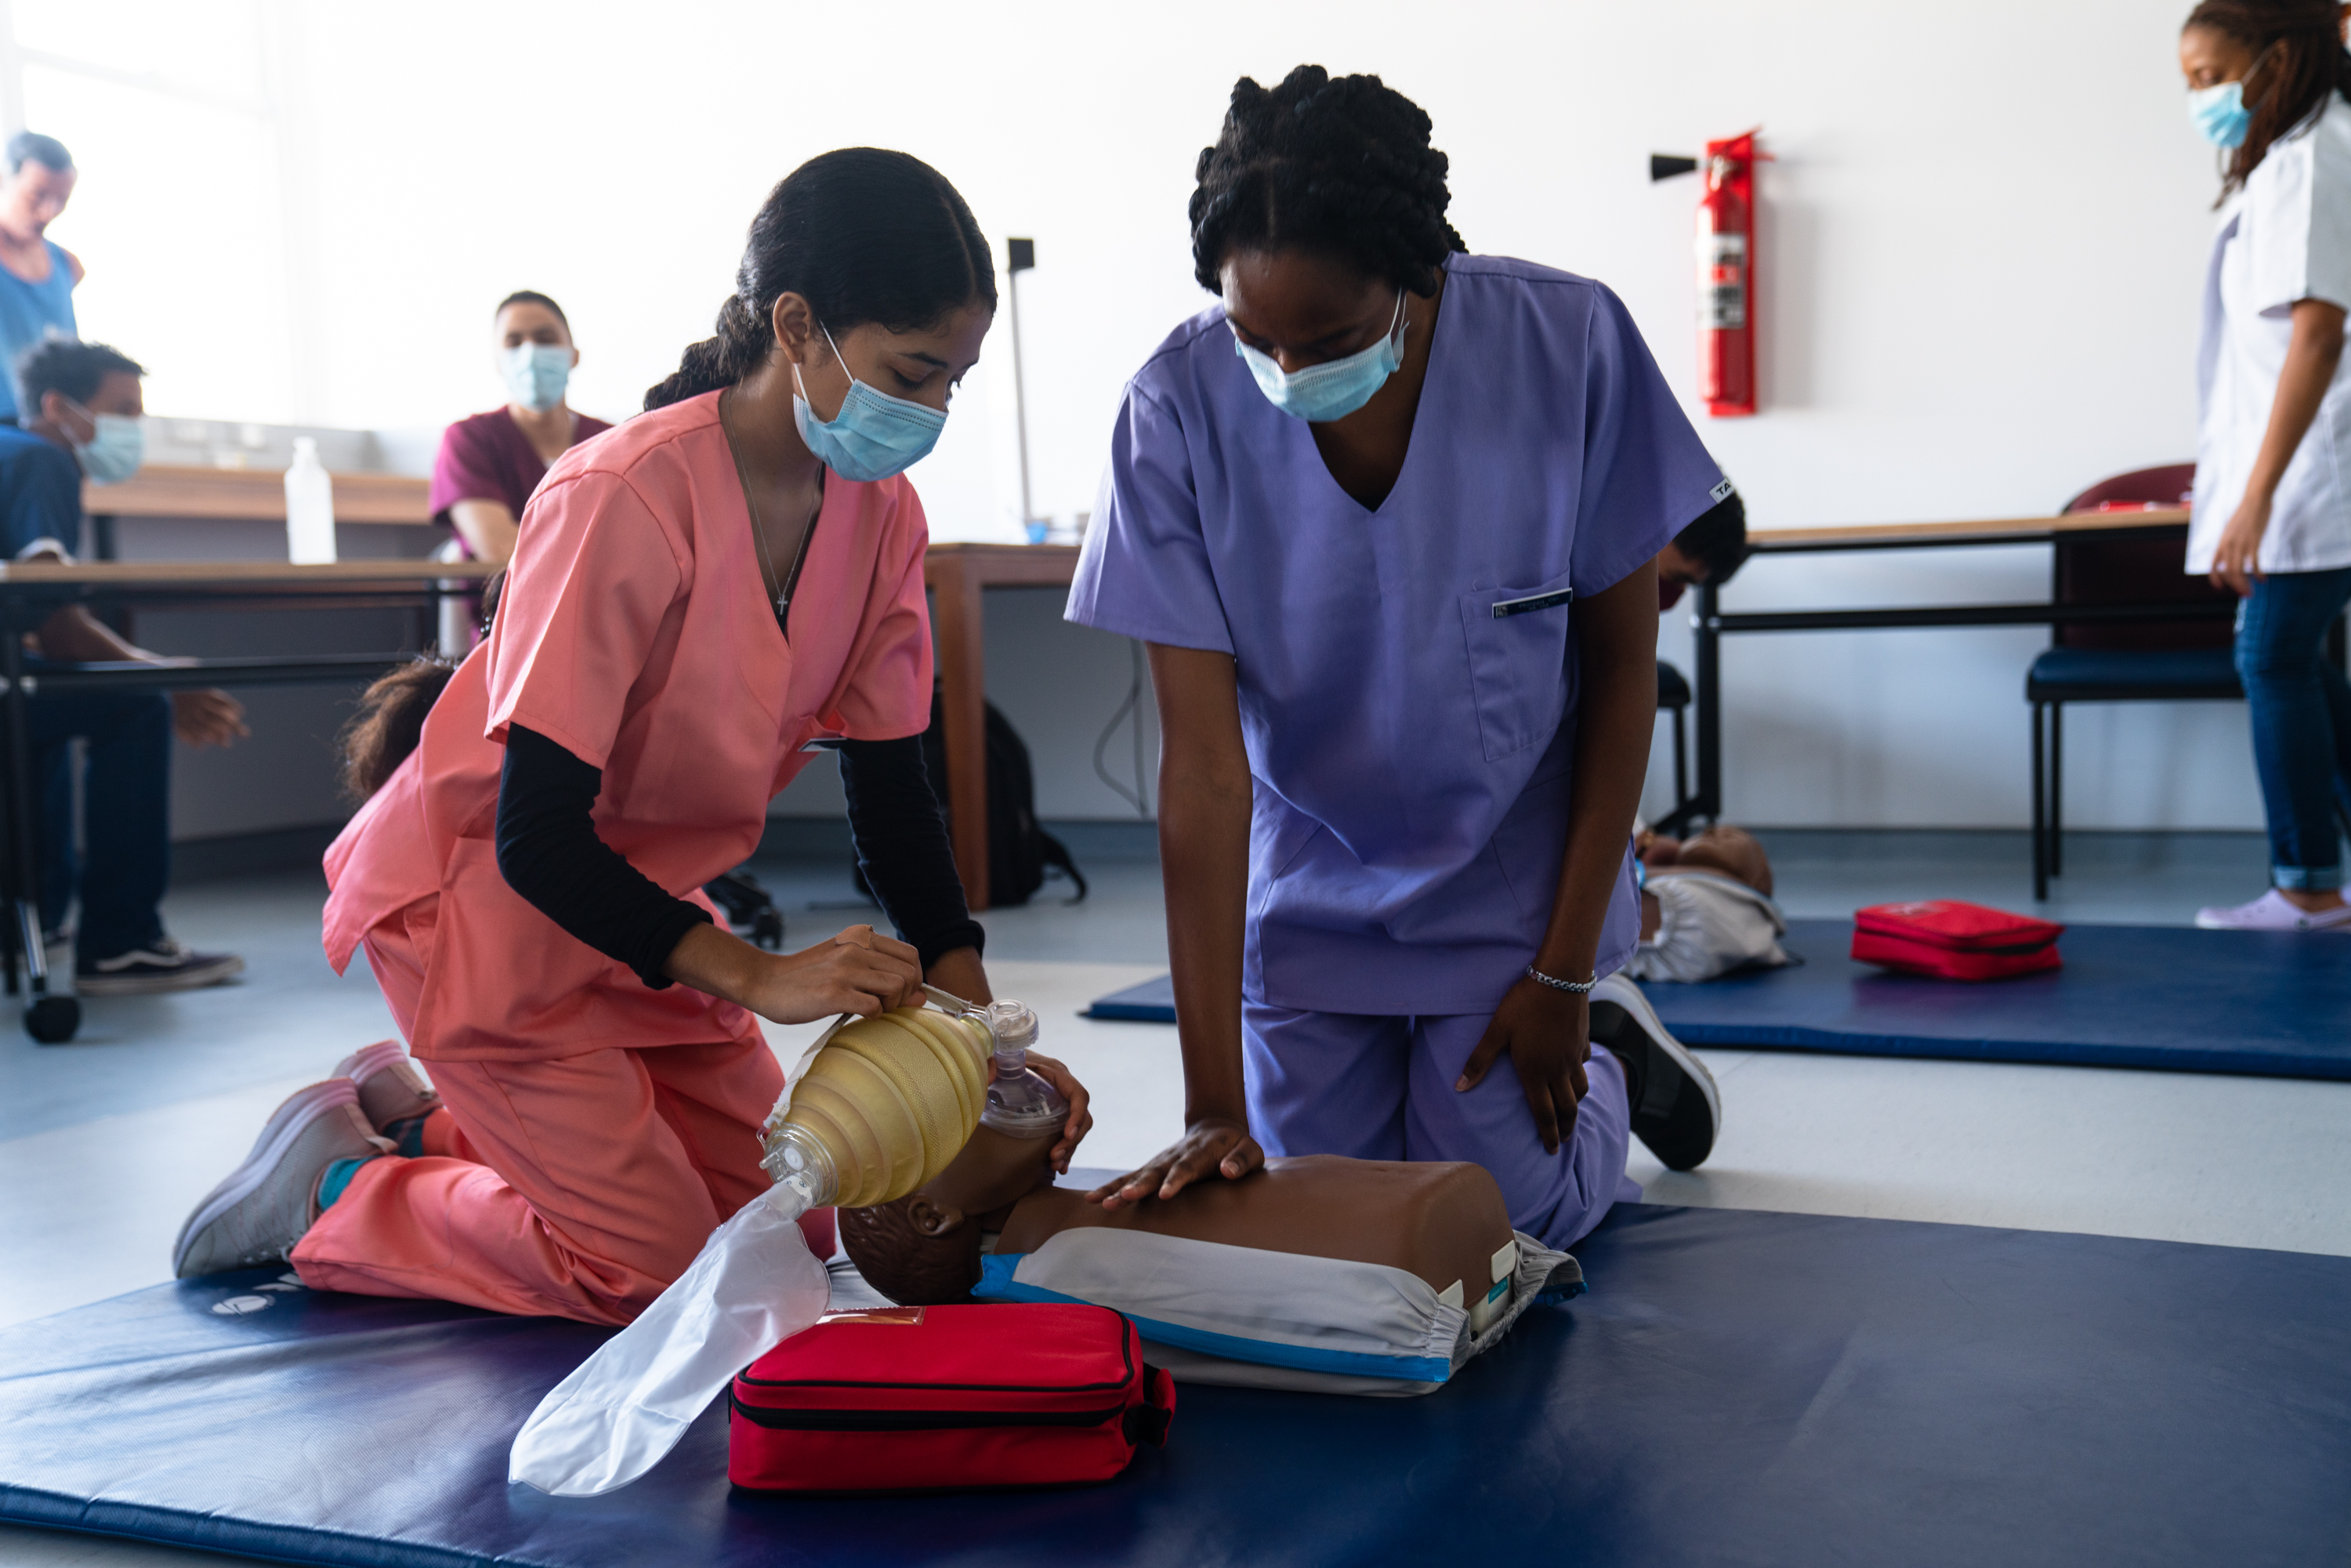 Paediatric resuscitation practice